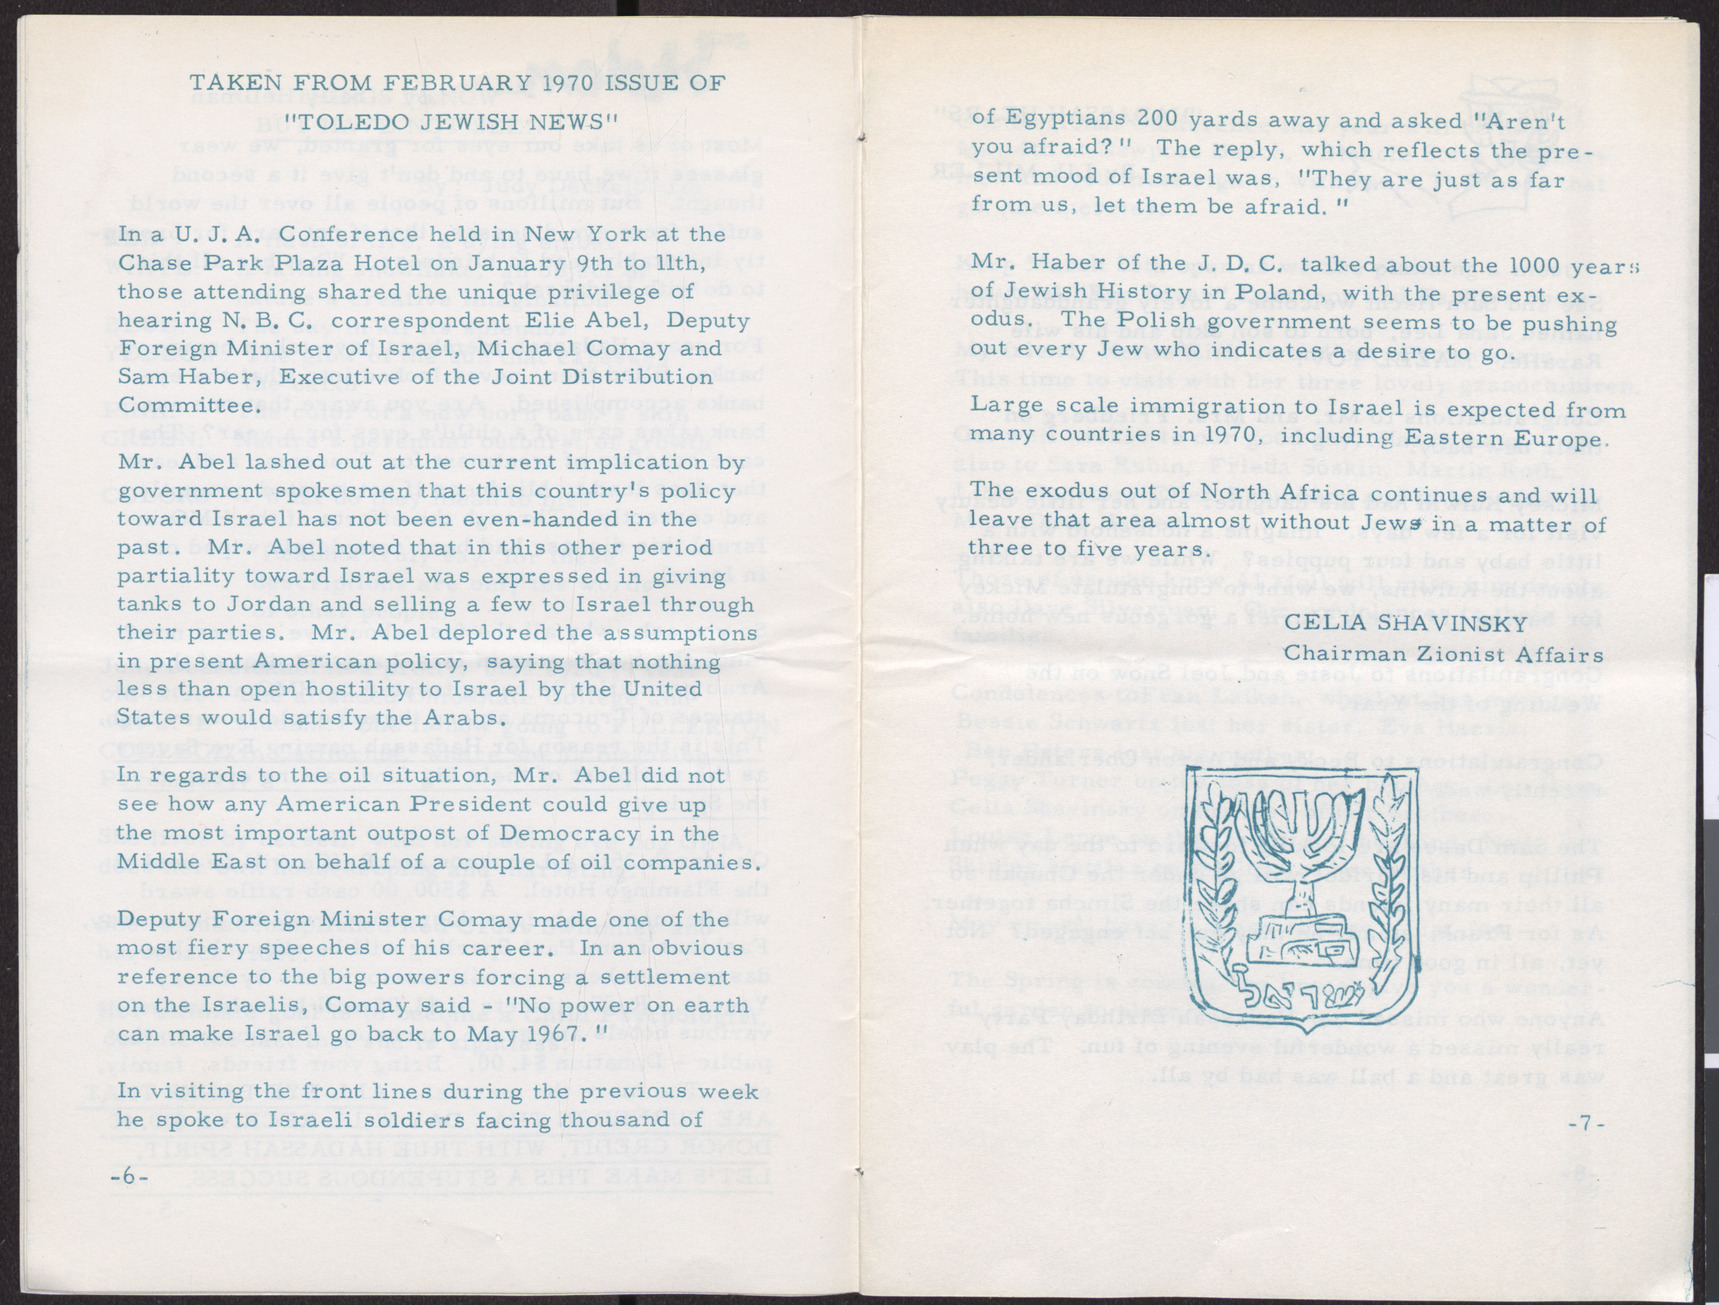 Hadassah Newsletter, March 1970, page 6-7